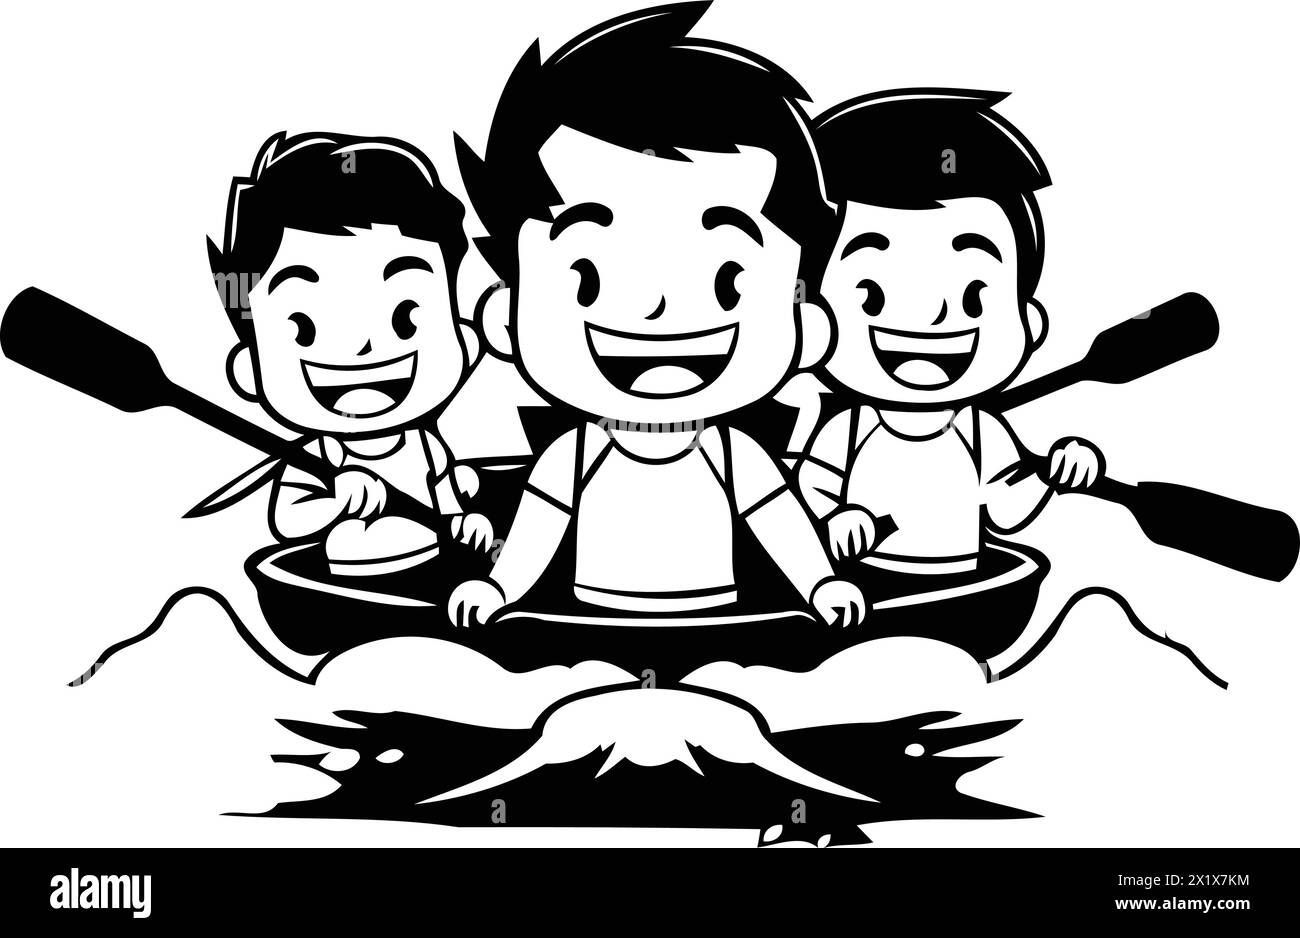 Un gruppo di amici che regna in acqua. Illustrazione vettoriale cartoni animati. Illustrazione Vettoriale